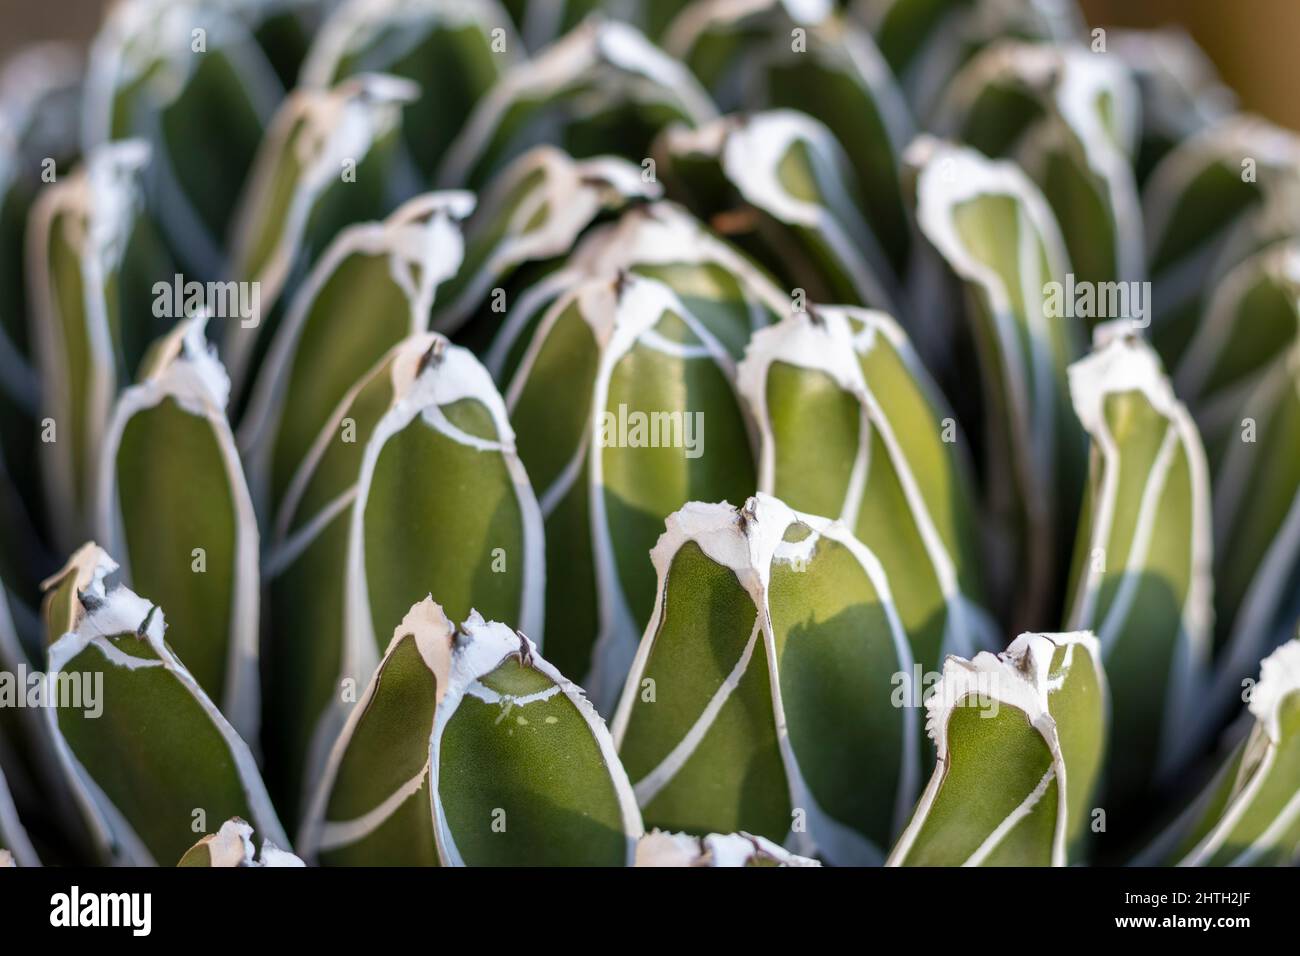 Agave reale con foglie geometriche Foto Stock